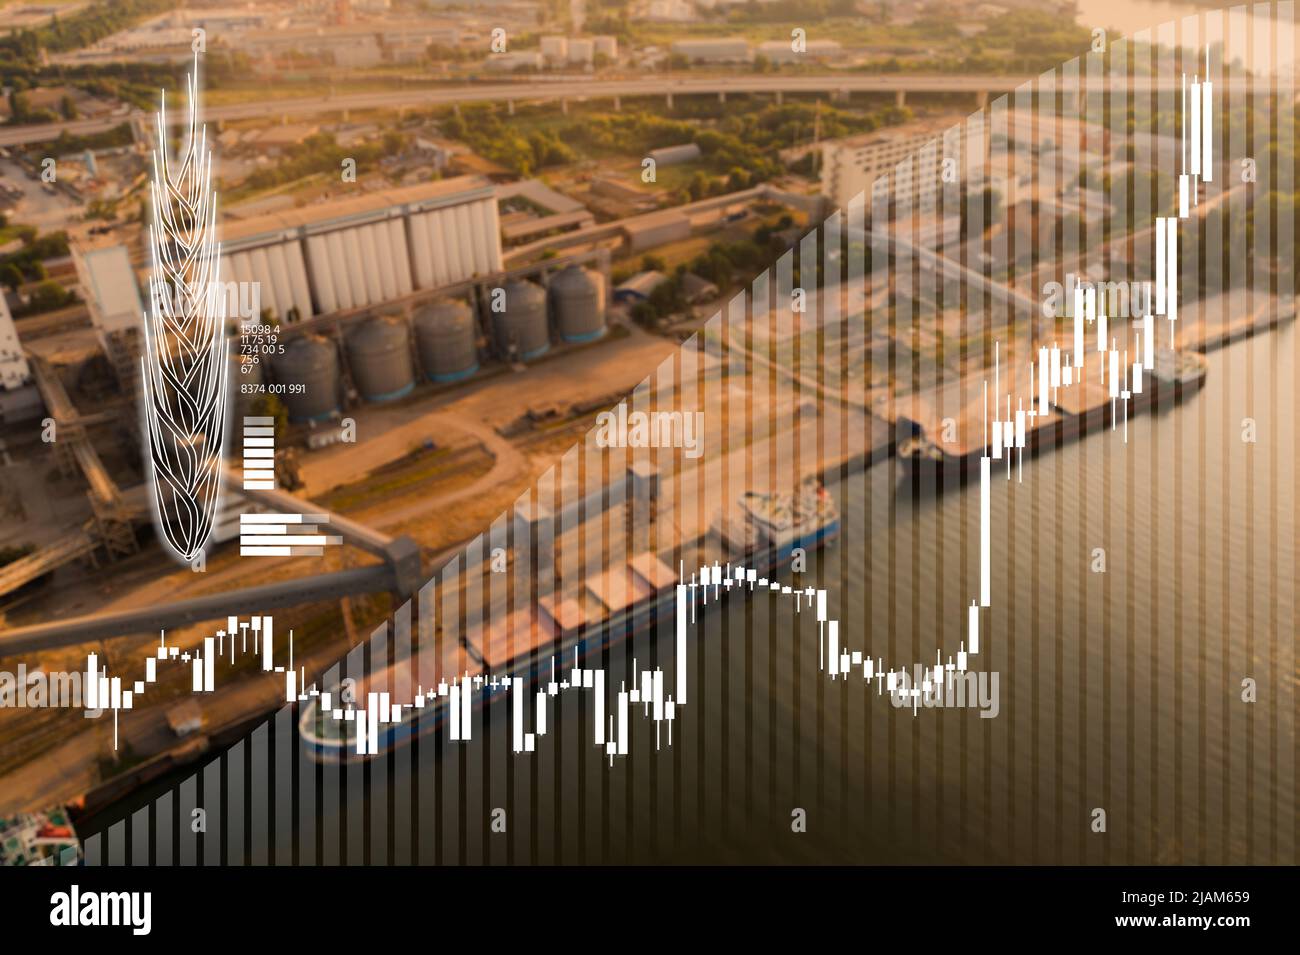 Diagramm zum Wachstum der Weizenpreise vor dem Hintergrund des Getreidehafens mit Silos und Schiffen Stockfoto